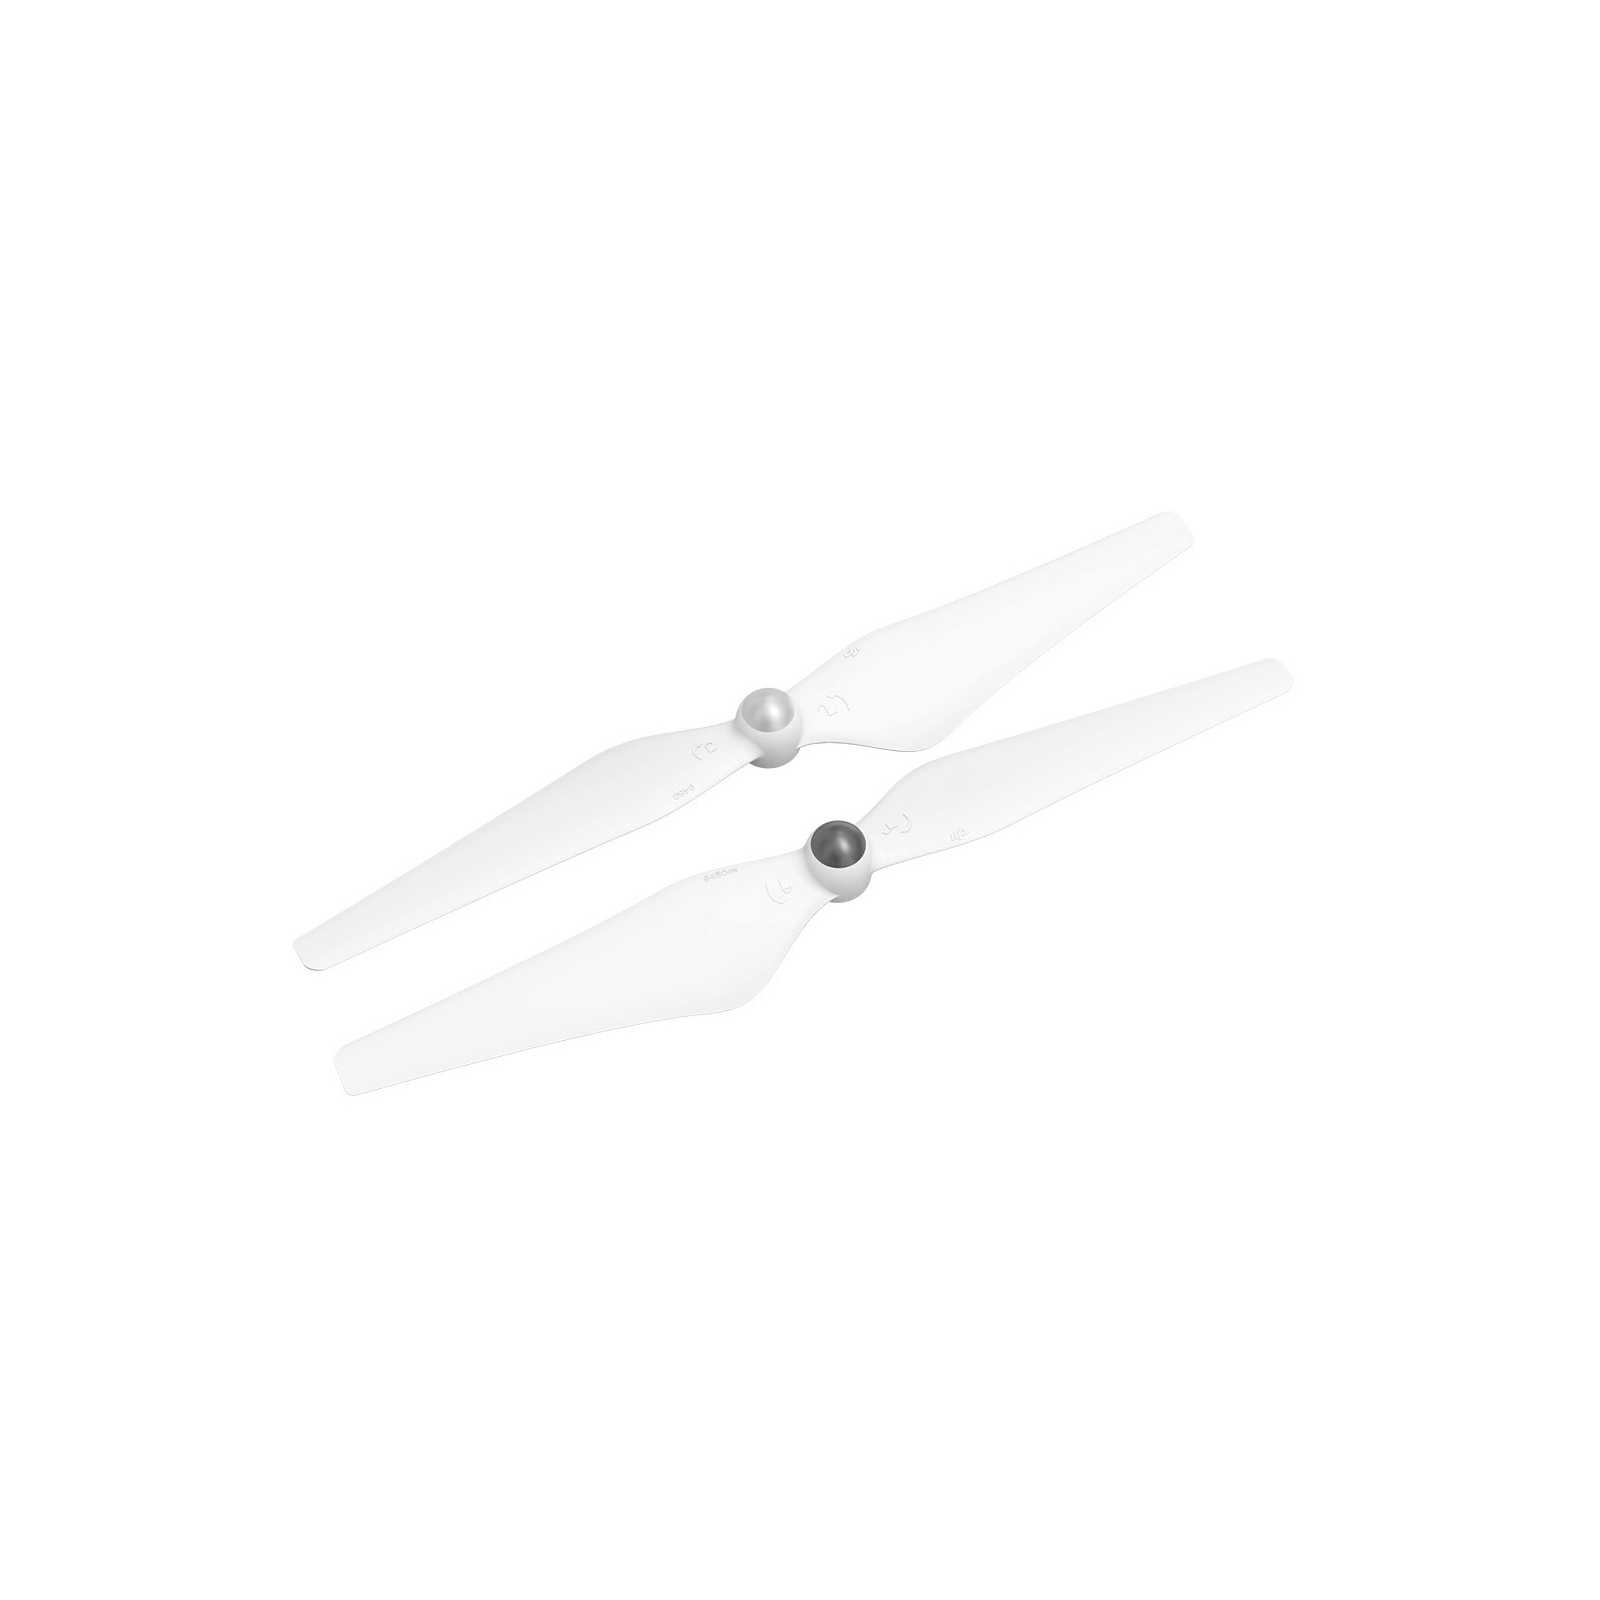 Пропеллер для дрона DJI 9450 (CP.PT.000195)